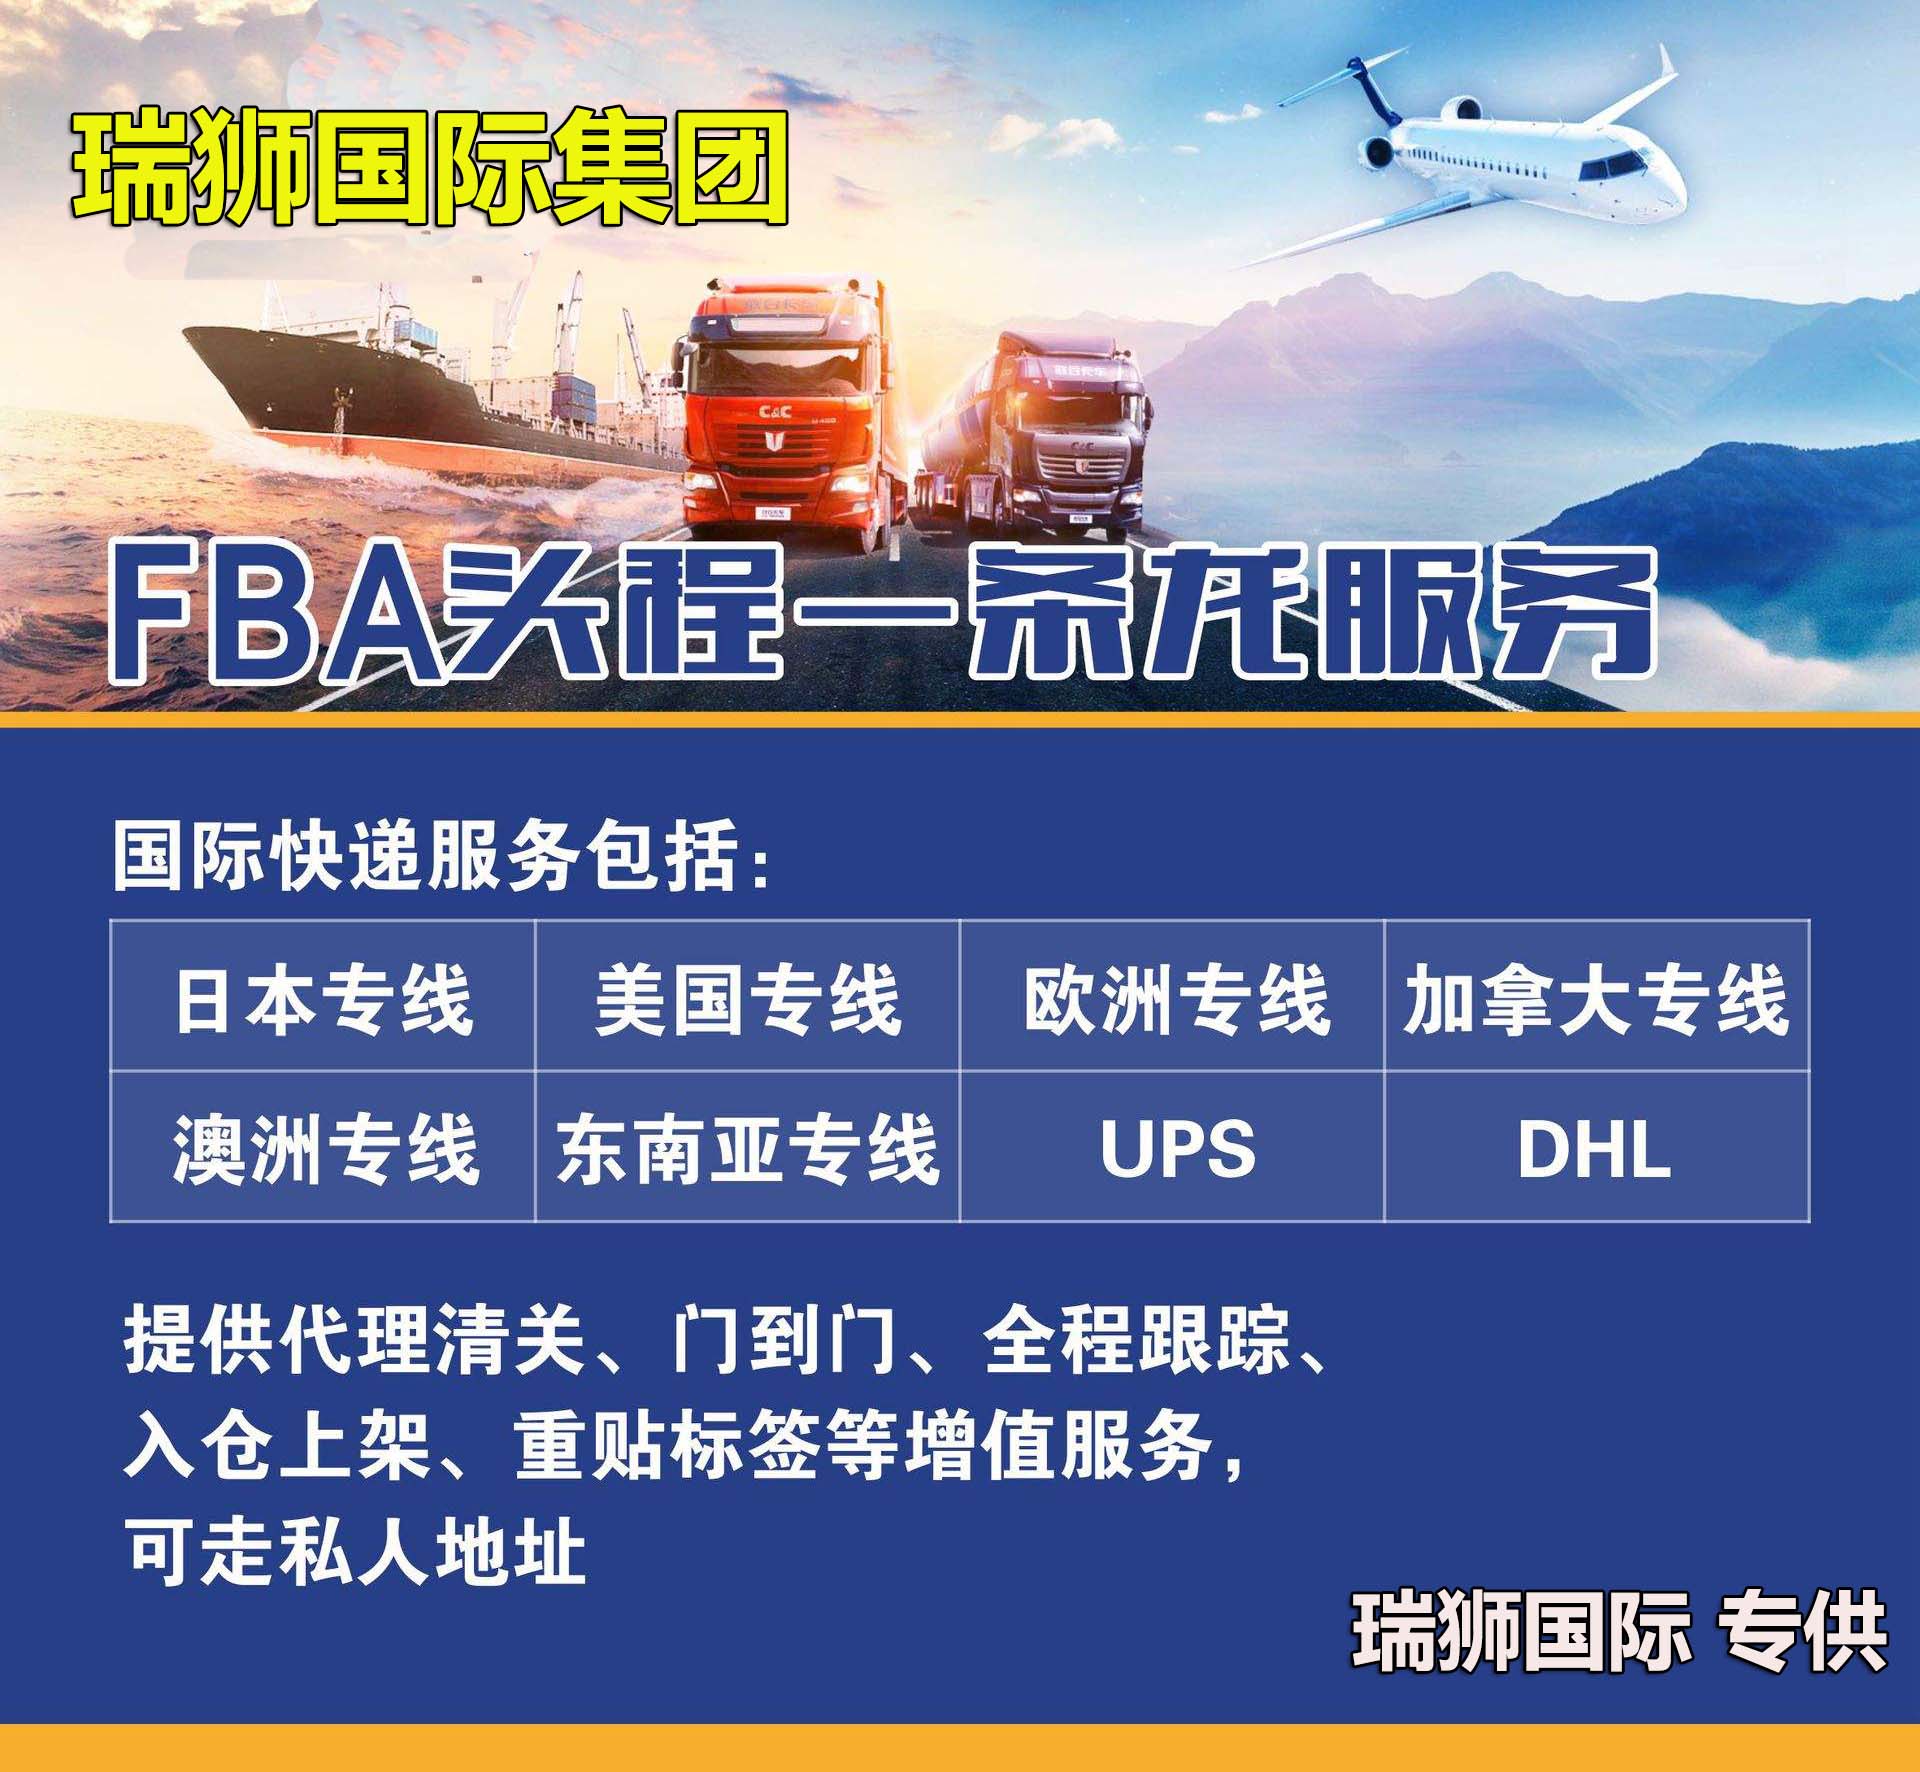 国际物流 国际货运代理 货运代理公司 航空国际货运 海空联运 多式联运